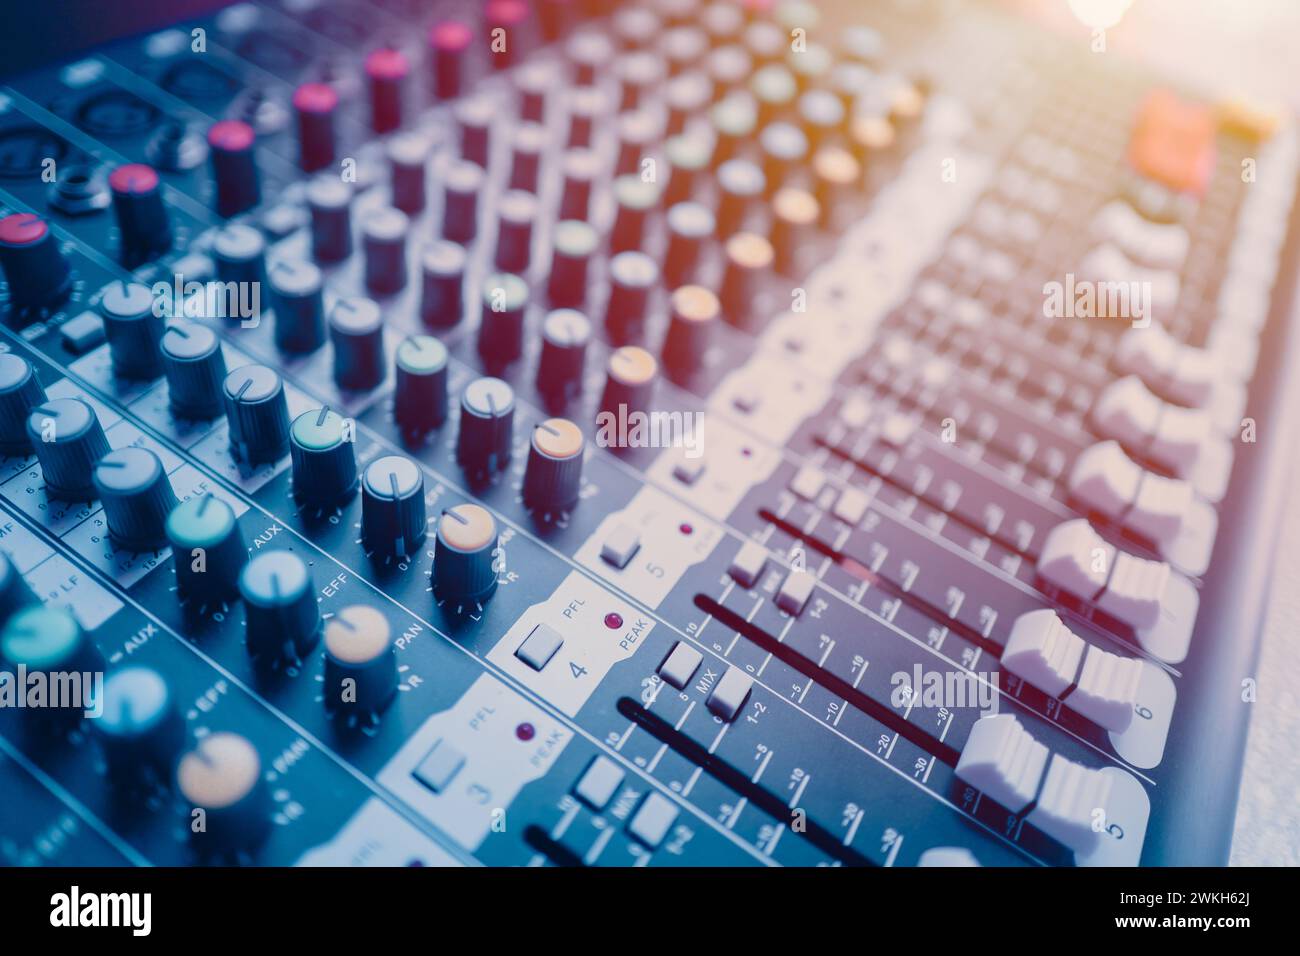 Nahaufnahme digitaler Mehrkanal-Sound-Mixer für Sprachaufnahmen. Sound Engineer Tools Editor im Studio oder auf der Bühne zeigen Instrumente blauen Farbton Stockfoto